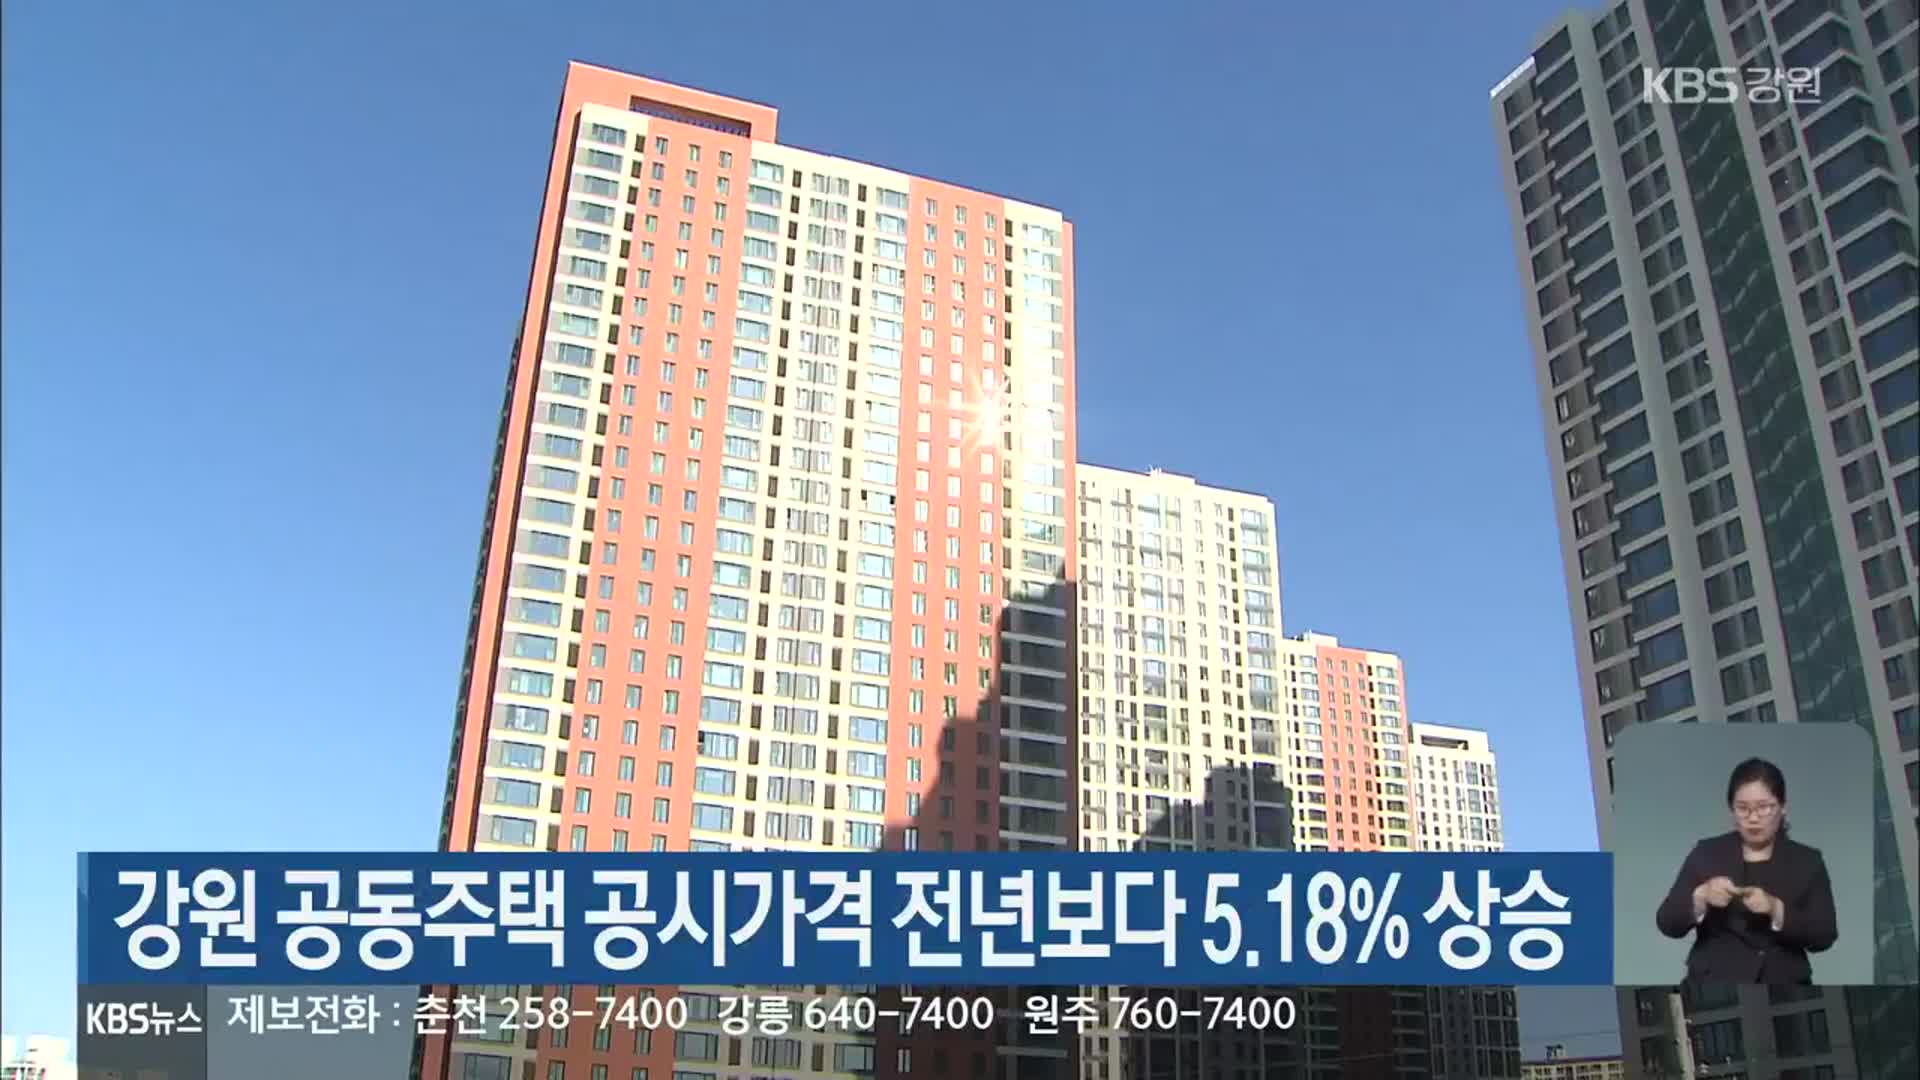 강원 공동주택 공시가격 전년보다 5.18% 상승